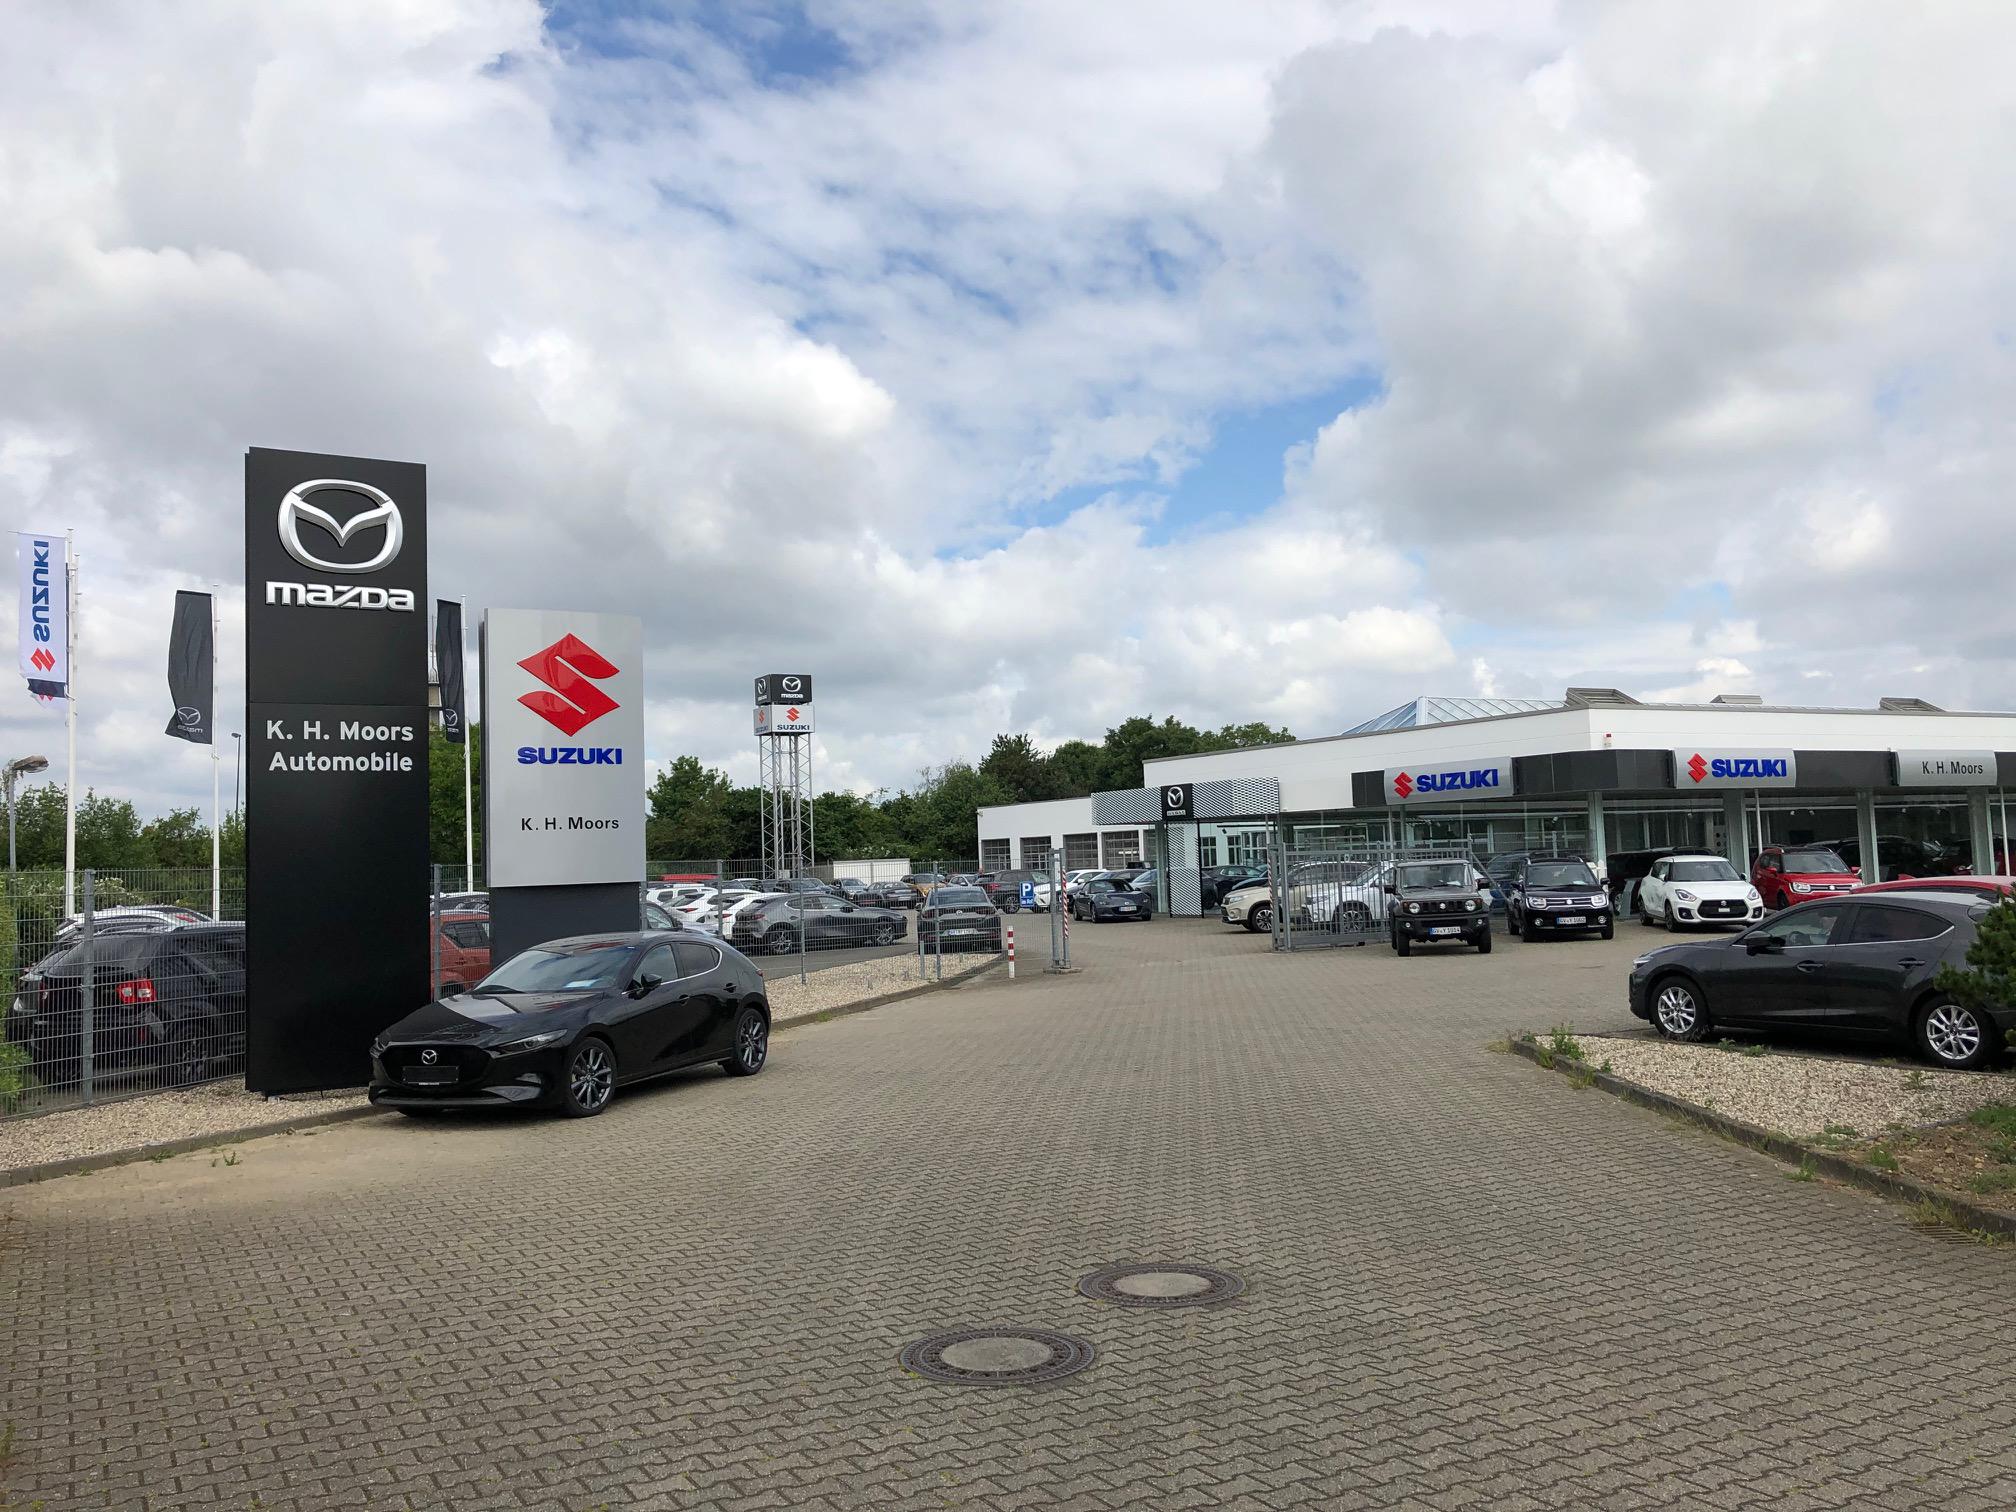 Bild 6 K.H. Moors GmbH Automobile Mazda + Suzuki-Vertragshändler in Grevenbroich